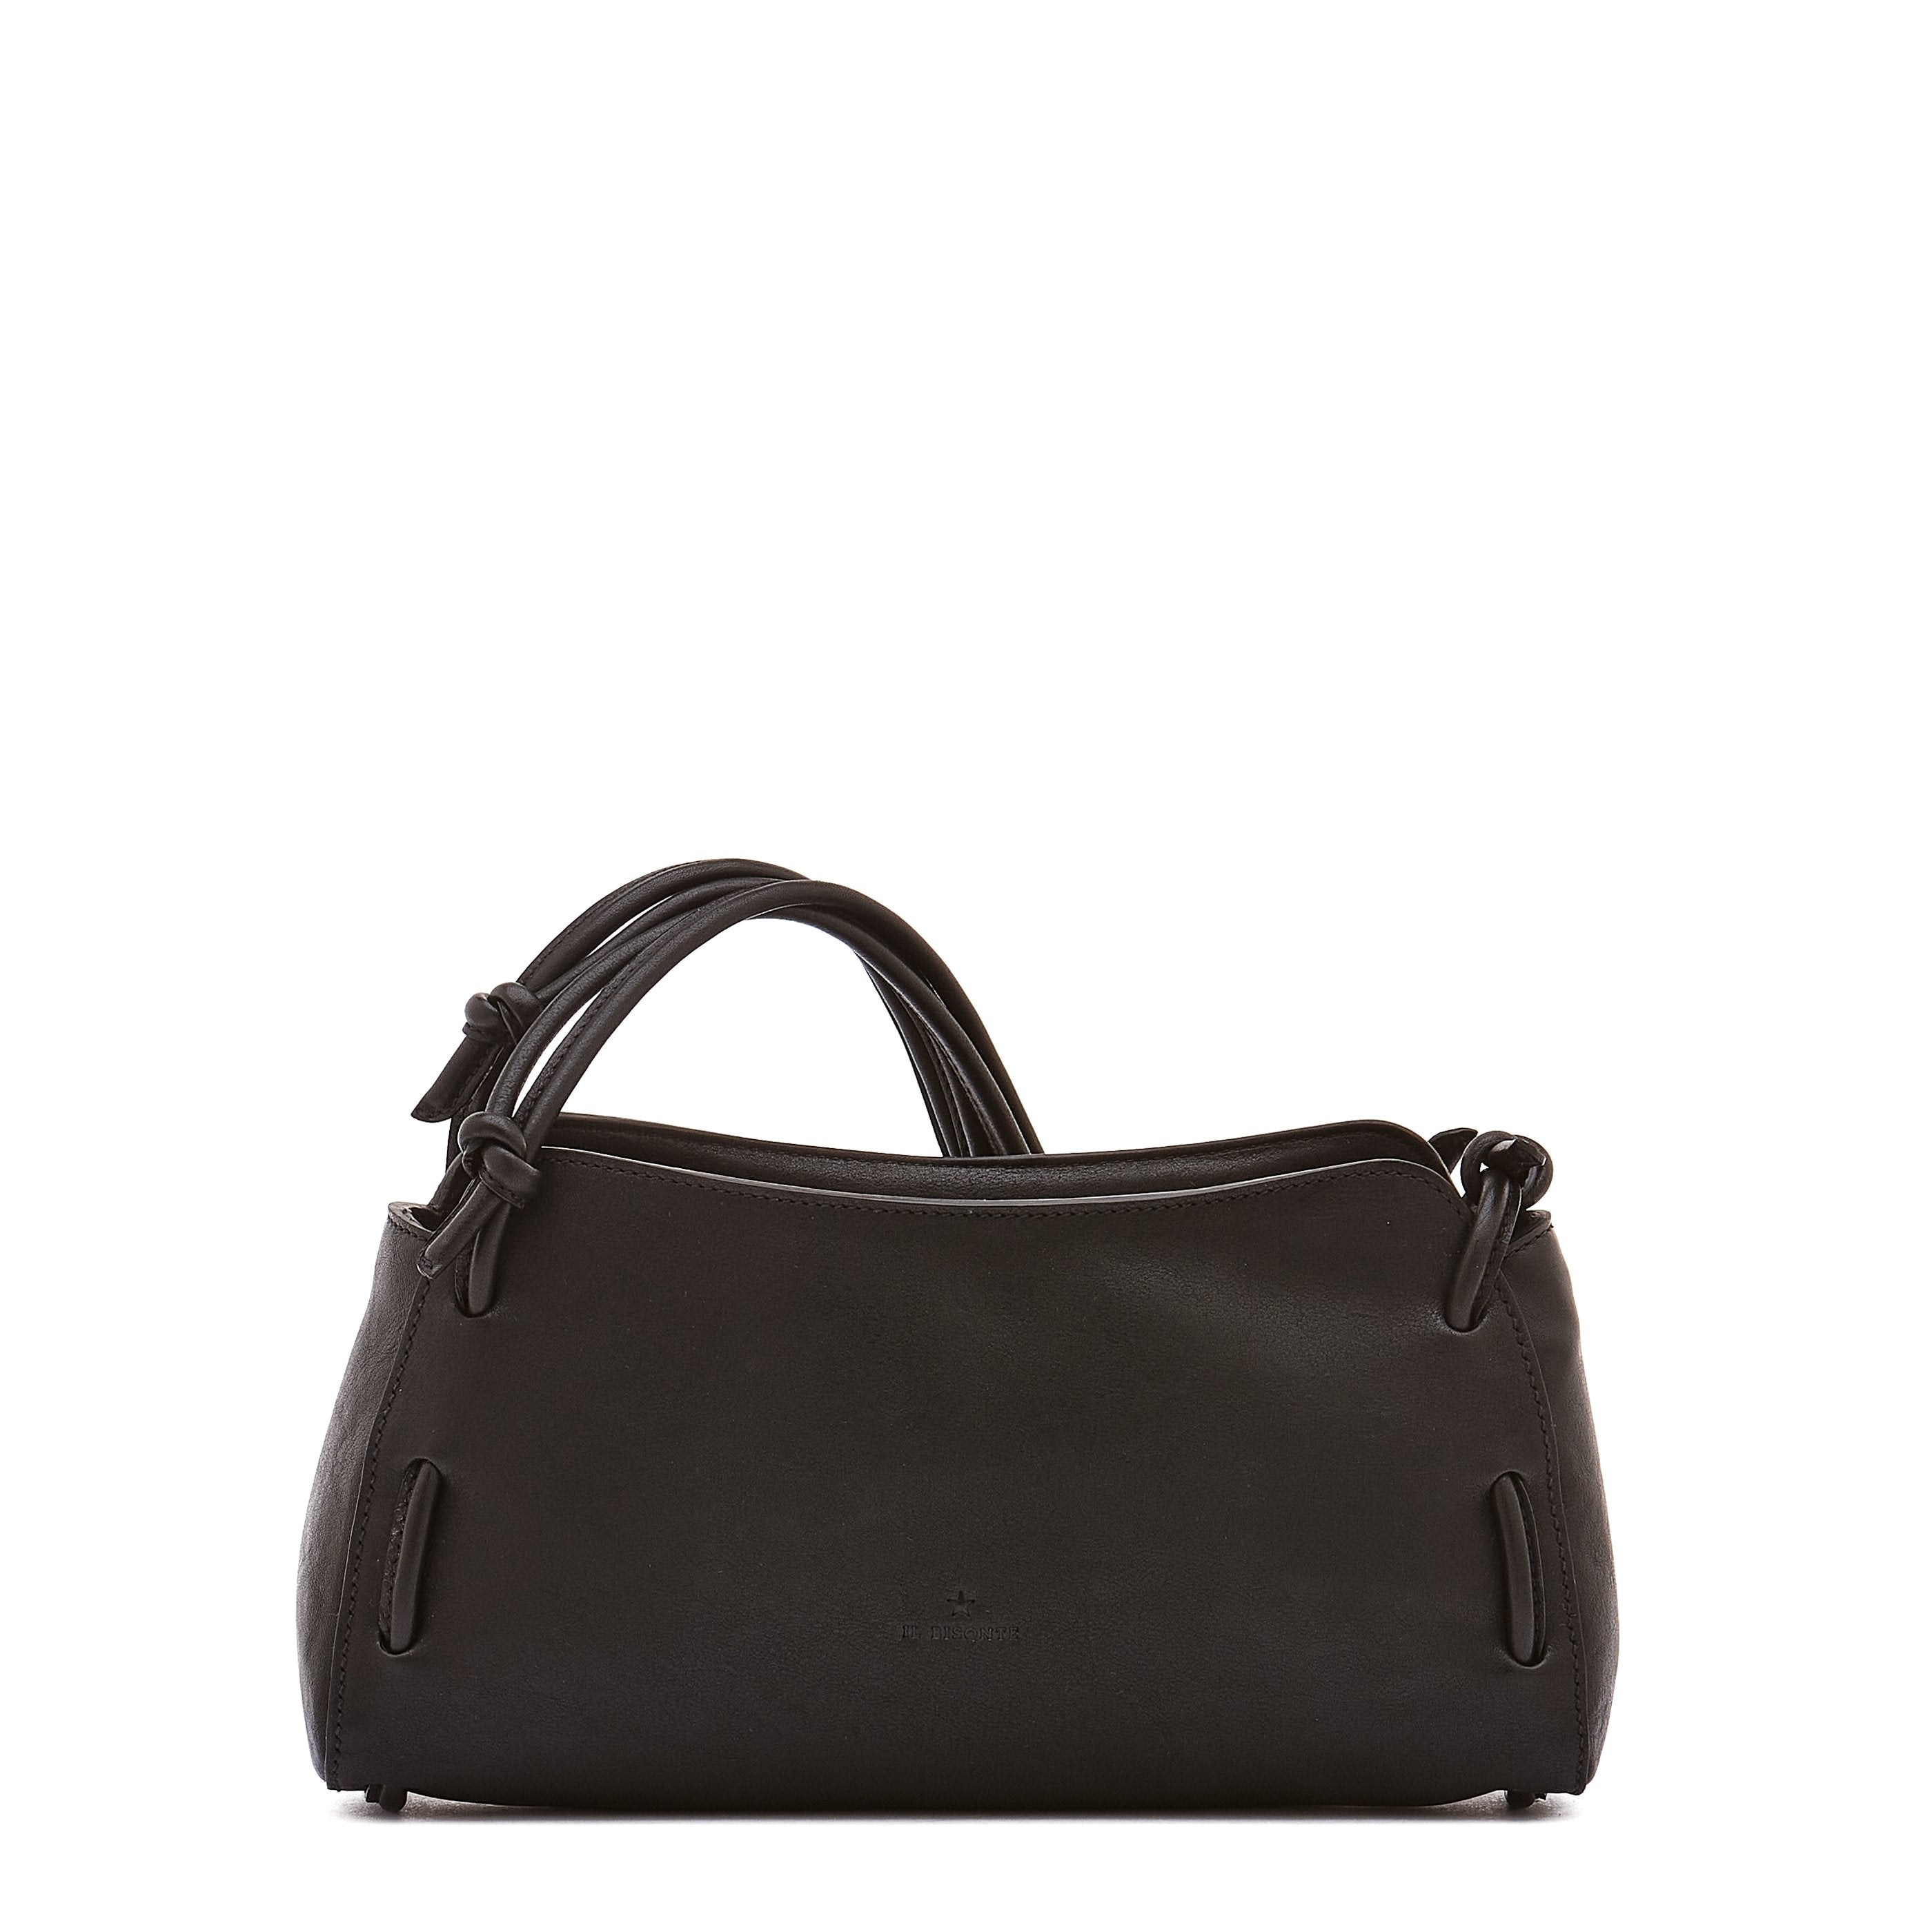 Snodo | Women's shoulder bag in vintage leather color black – Il 